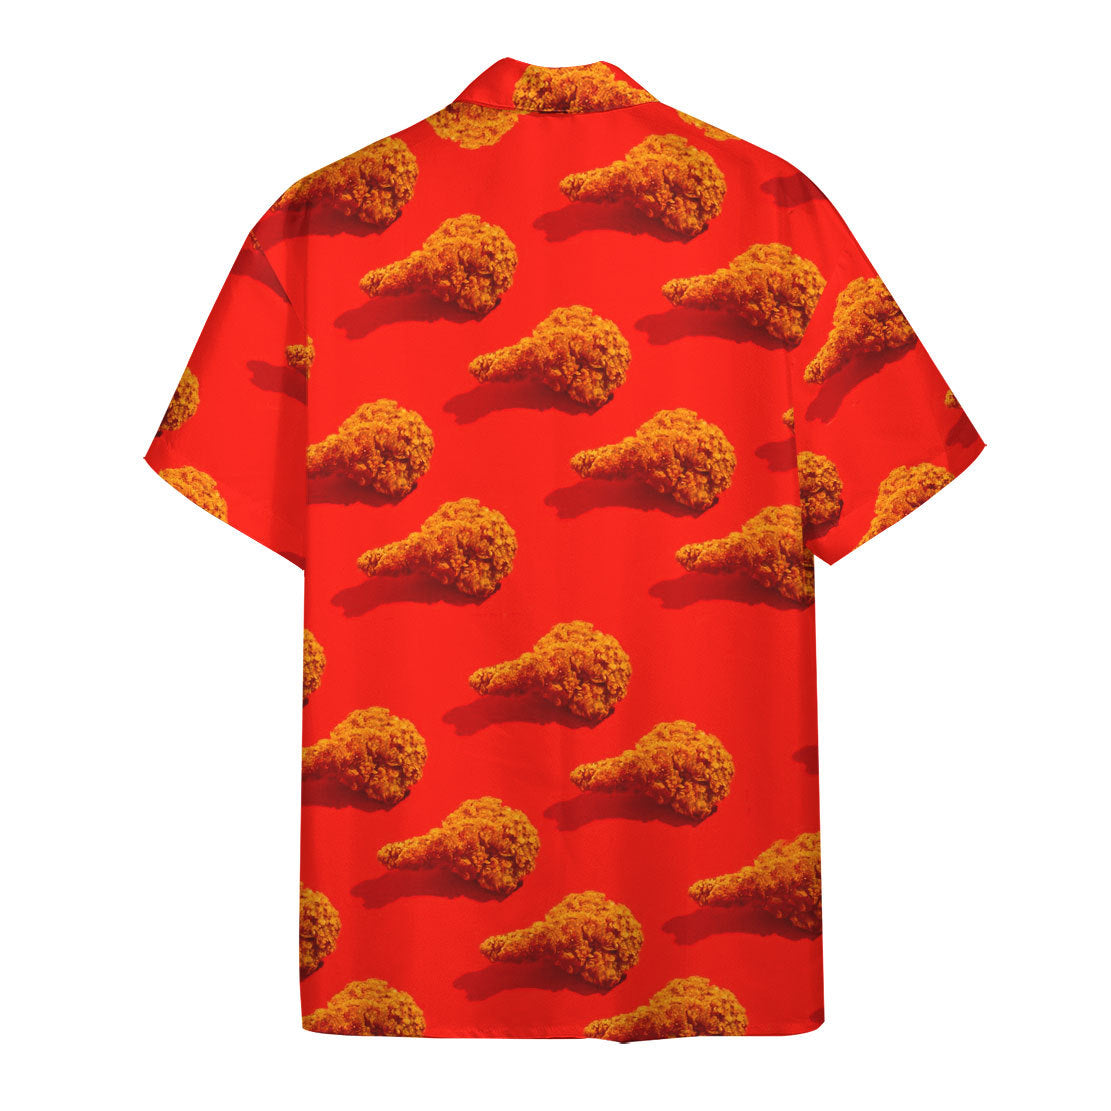 Fried Chicken Hawaii Shirt 1